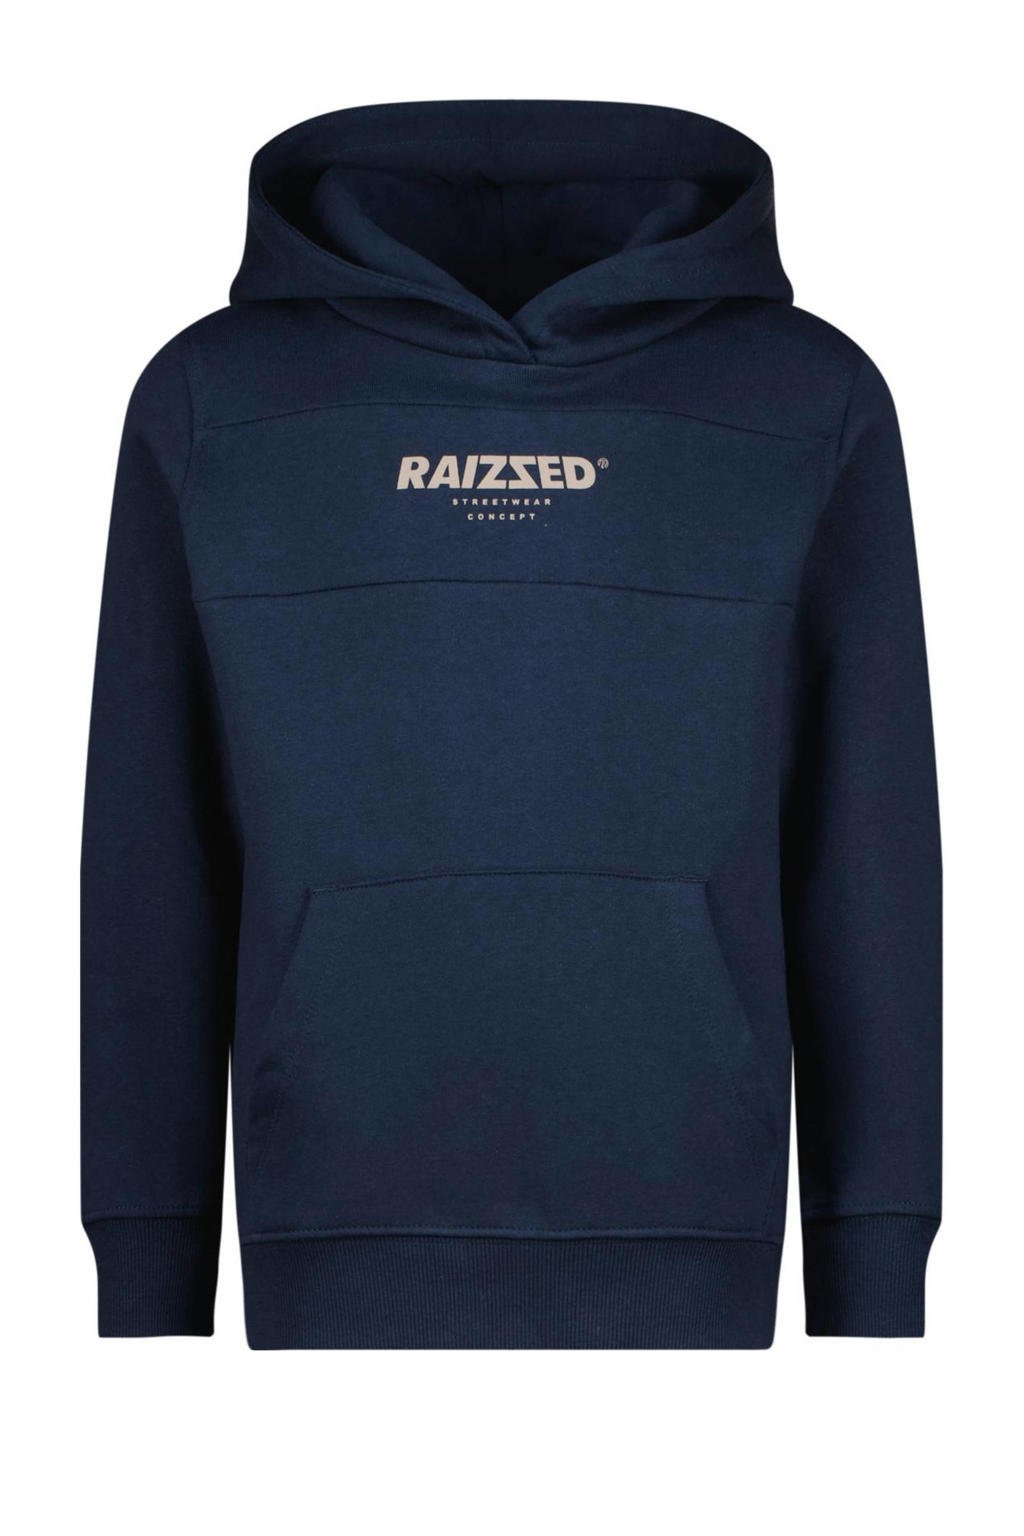 Blauwe jongens Raizzed hoodie Pinesburg van sweat materiaal met logo dessin, lange mouwen en capuchon